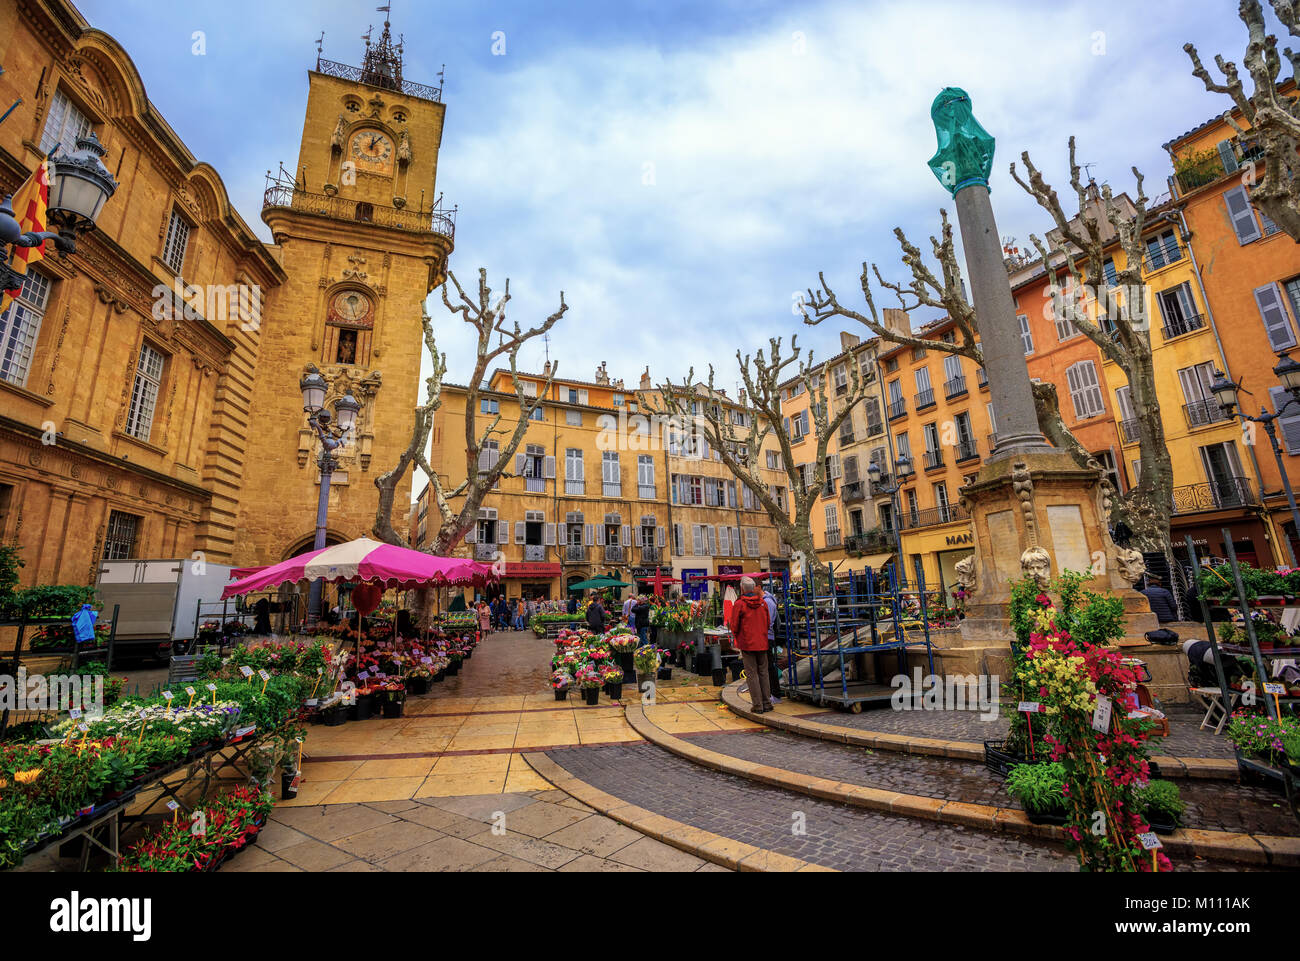 Aix-en-Provence, Frankreich - 21. April: Der traditionelle Blumenmarkt in der Altstadt von Aix, am 21. April 2016 in Aix-en-Provence, Frankreich Stockfoto